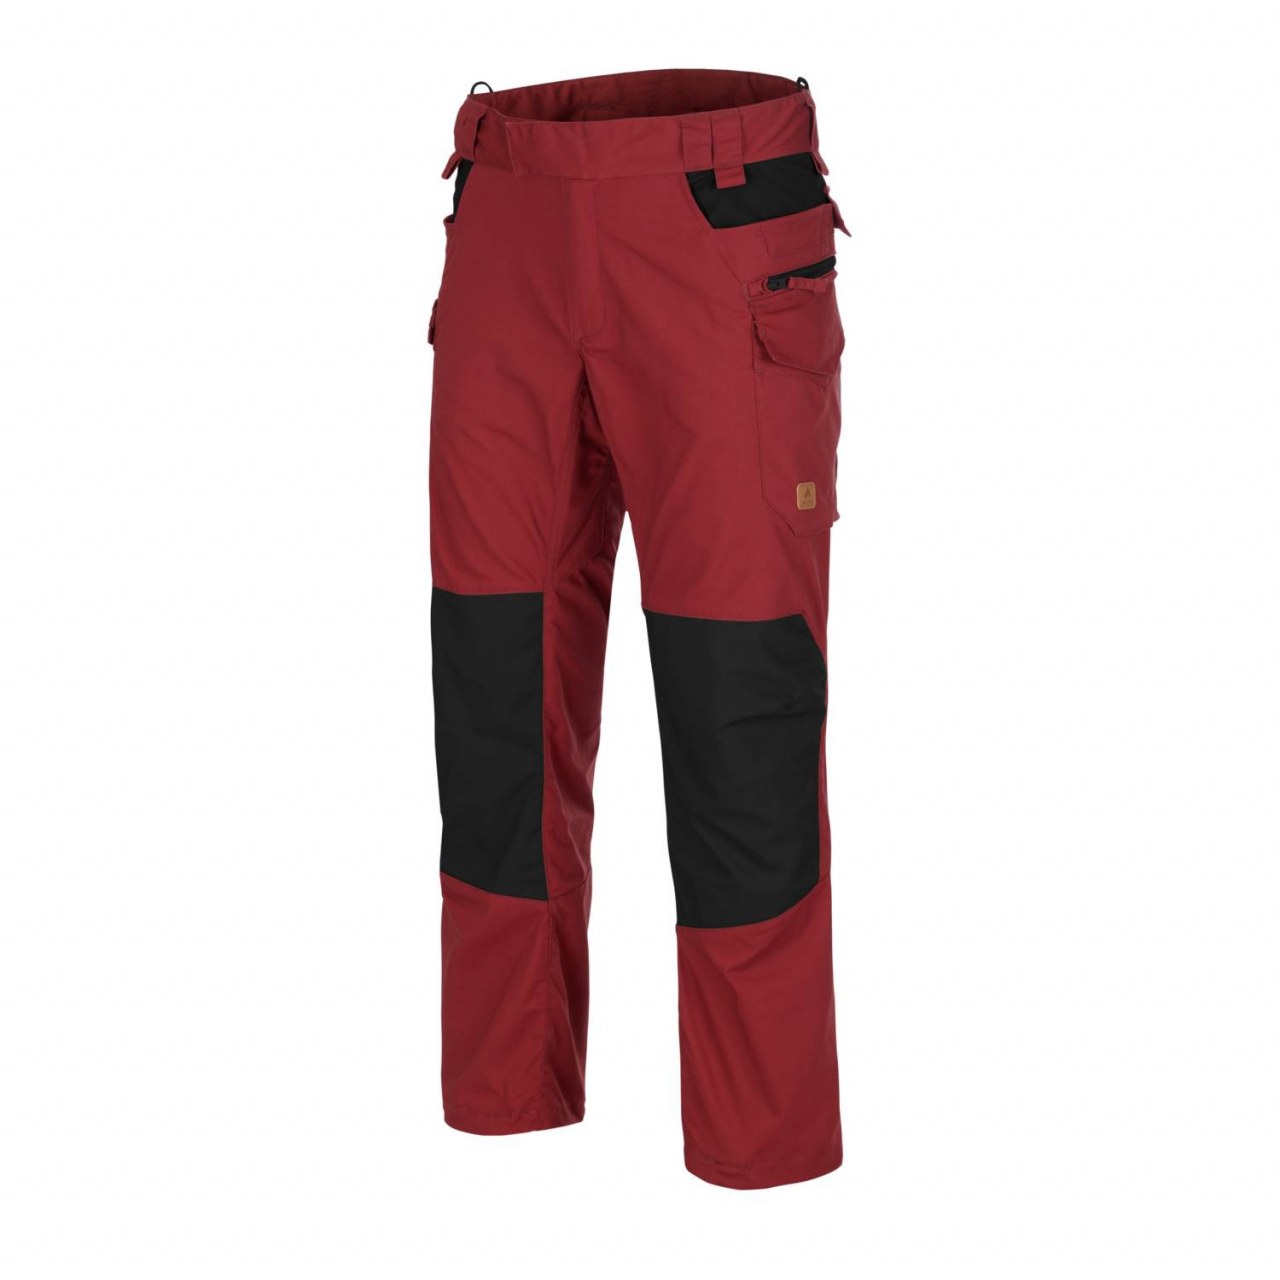 Kalhoty Helikon Pilgrim - červené-černé, M